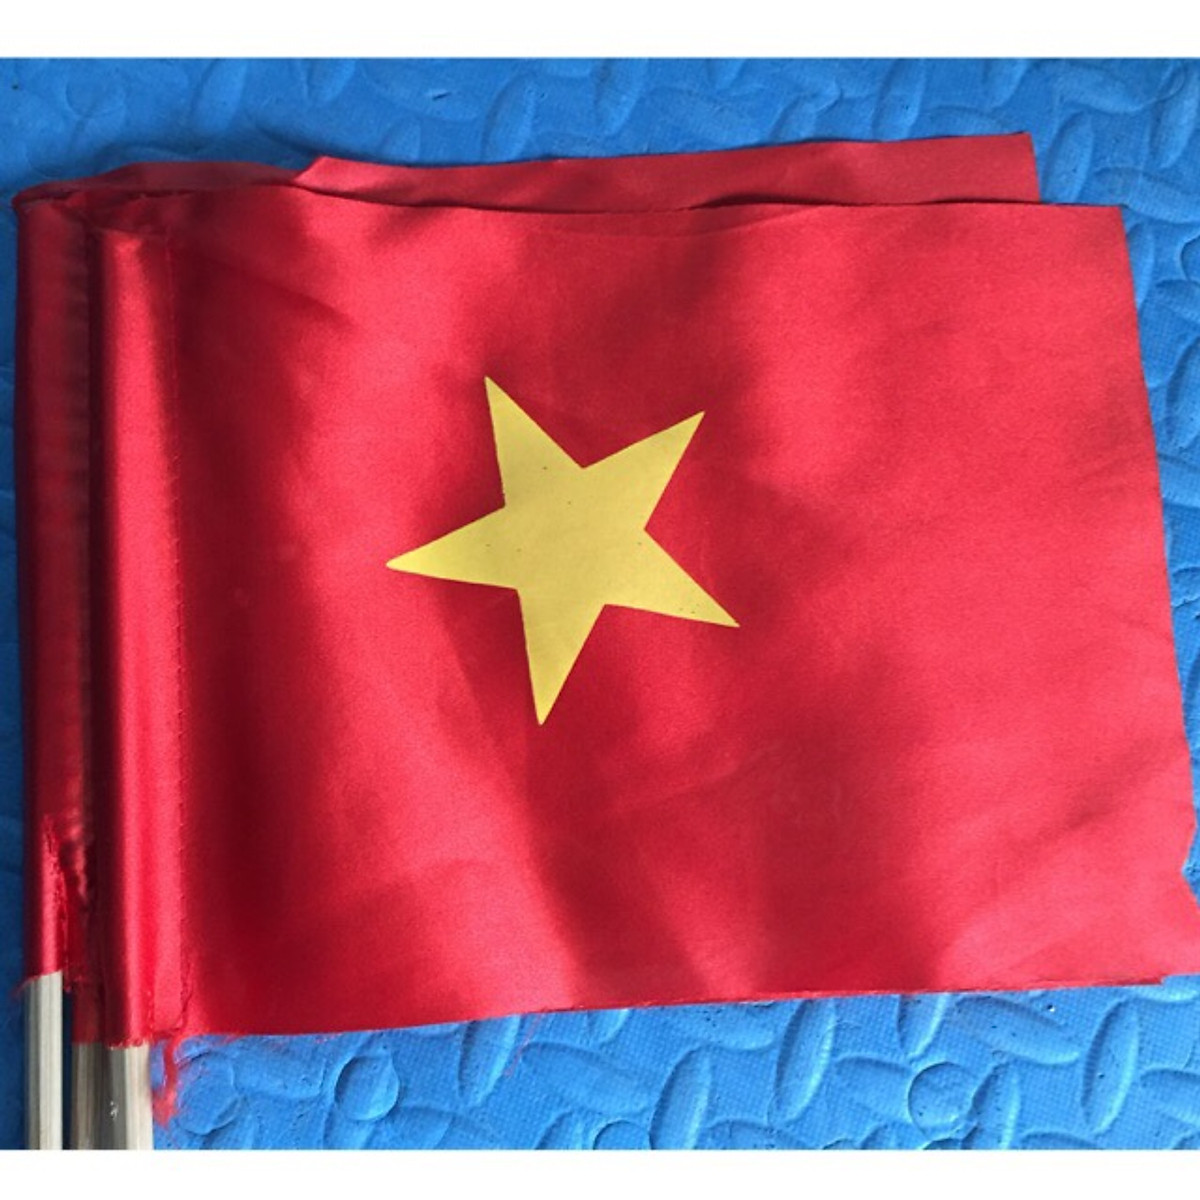 Combo cờ cổ động cầm tay Việt Nam là sản phẩm ưu việt, hoàn hảo dành cho những người đam mê cờ và yêu thích đội tuyển Việt Nam. Thiết kế sang trọng, cầu kỳ và chất lượng tốt được đảm bảo mang đến cho bạn những trải nghiệm hết sức đặc biệt. Với Combo cờ cổ động cầm tay Việt Nam, bạn sẽ không chỉ là một người hâm mộ mà còn là tình yêu chân chính của đội tuyển Việt Nam.